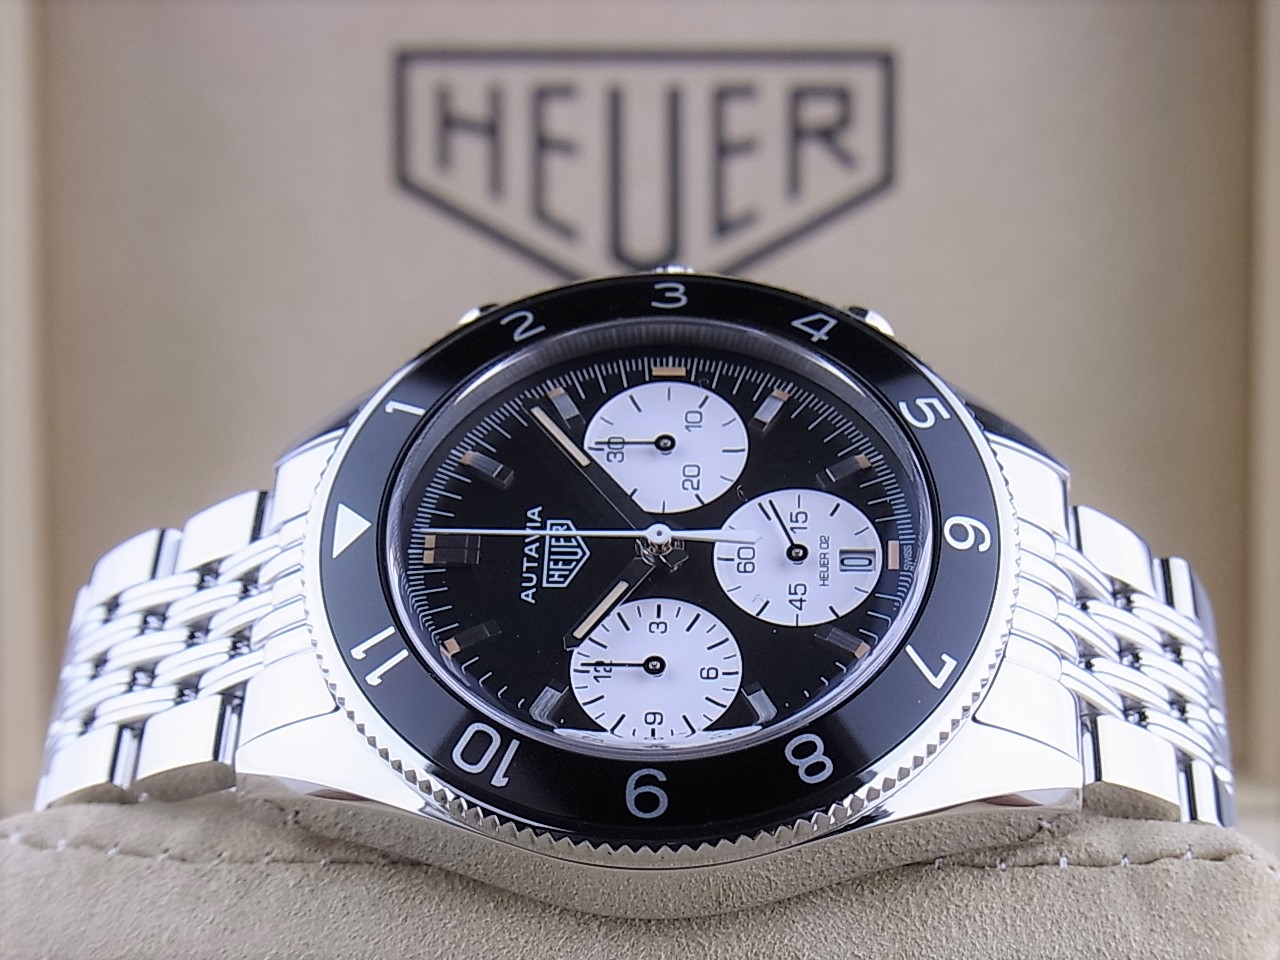 TAG HEUER】タグホイヤー オータヴィア ヘリテージキャリバー02 クロノグラフ CBE2110 自動巻き メンズ_709860 メンズ腕時計